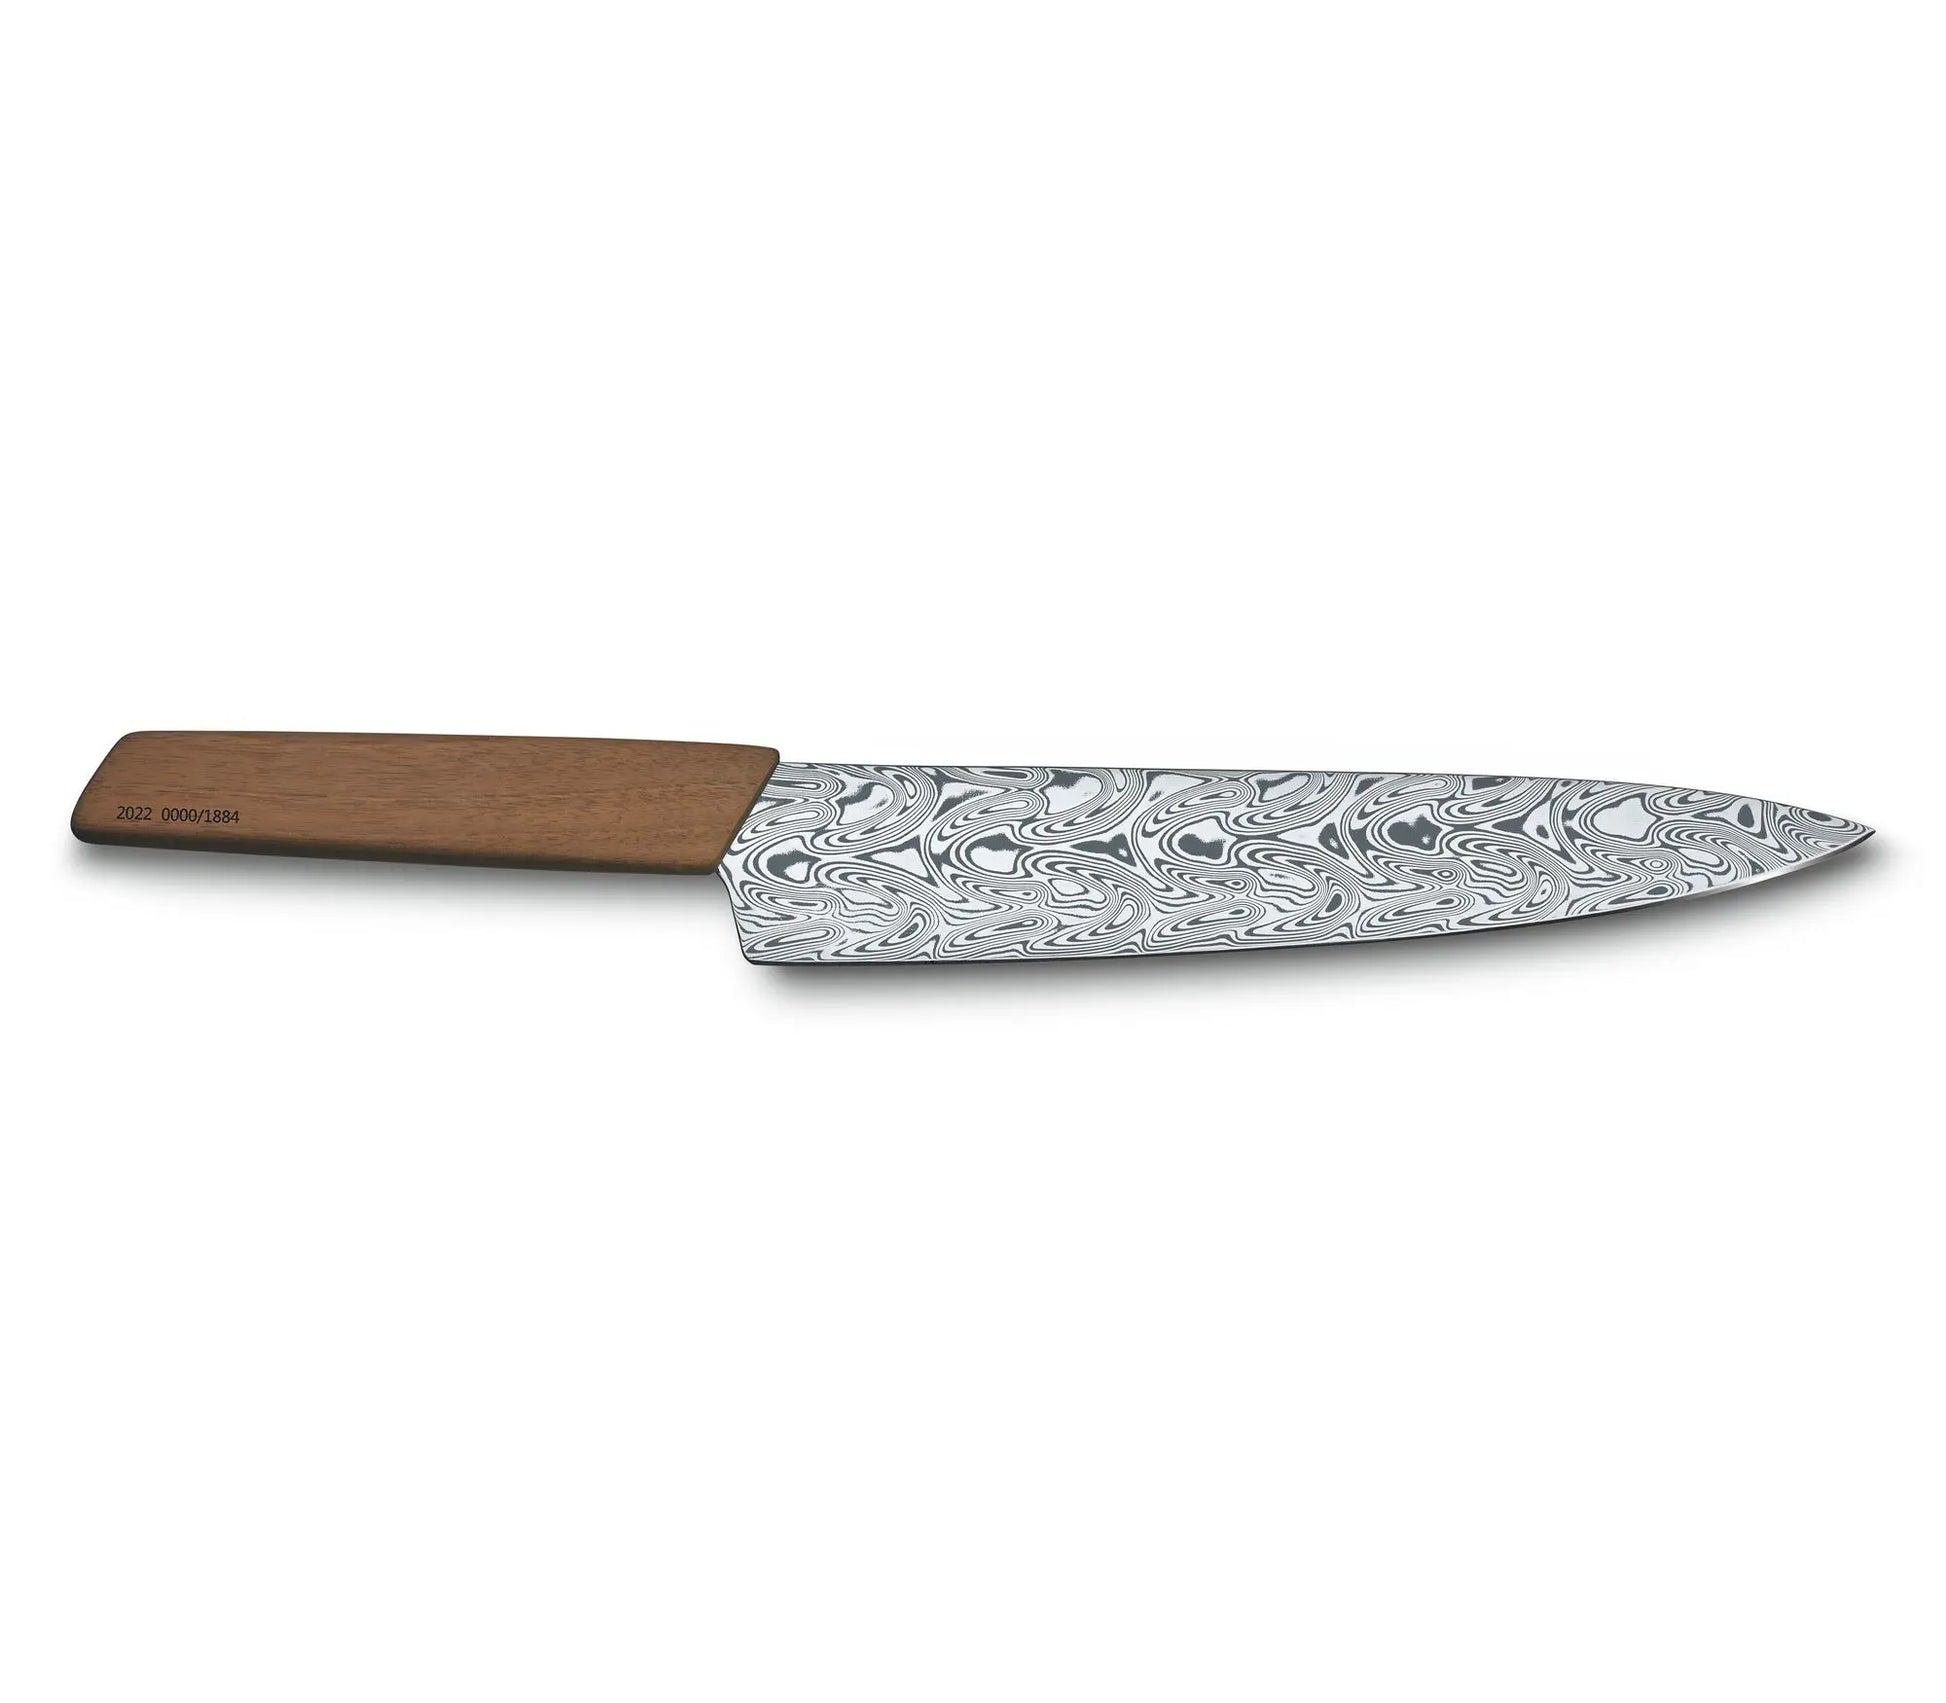 Victorinox moderno coltello cuoco damasco limited edition 2022